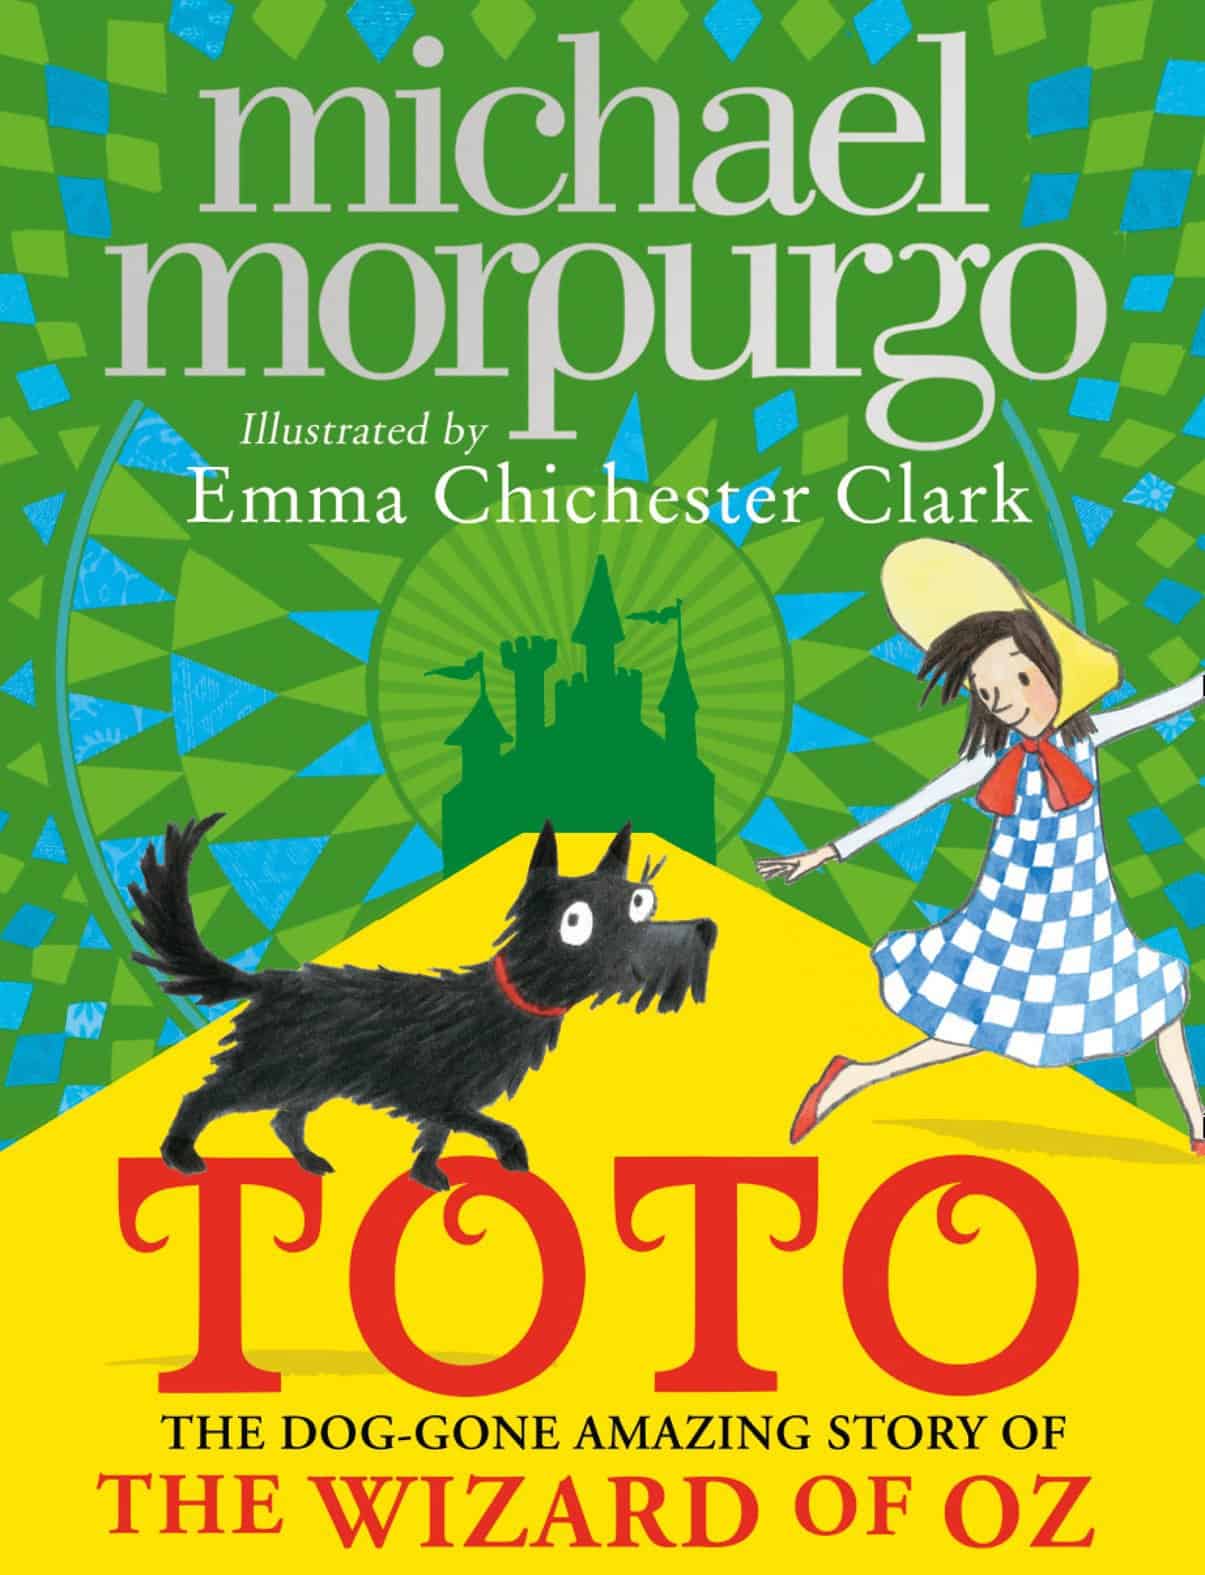 Toto: Alex Timbers dirigerà il film tratto dal libro di Michael Morpurgo